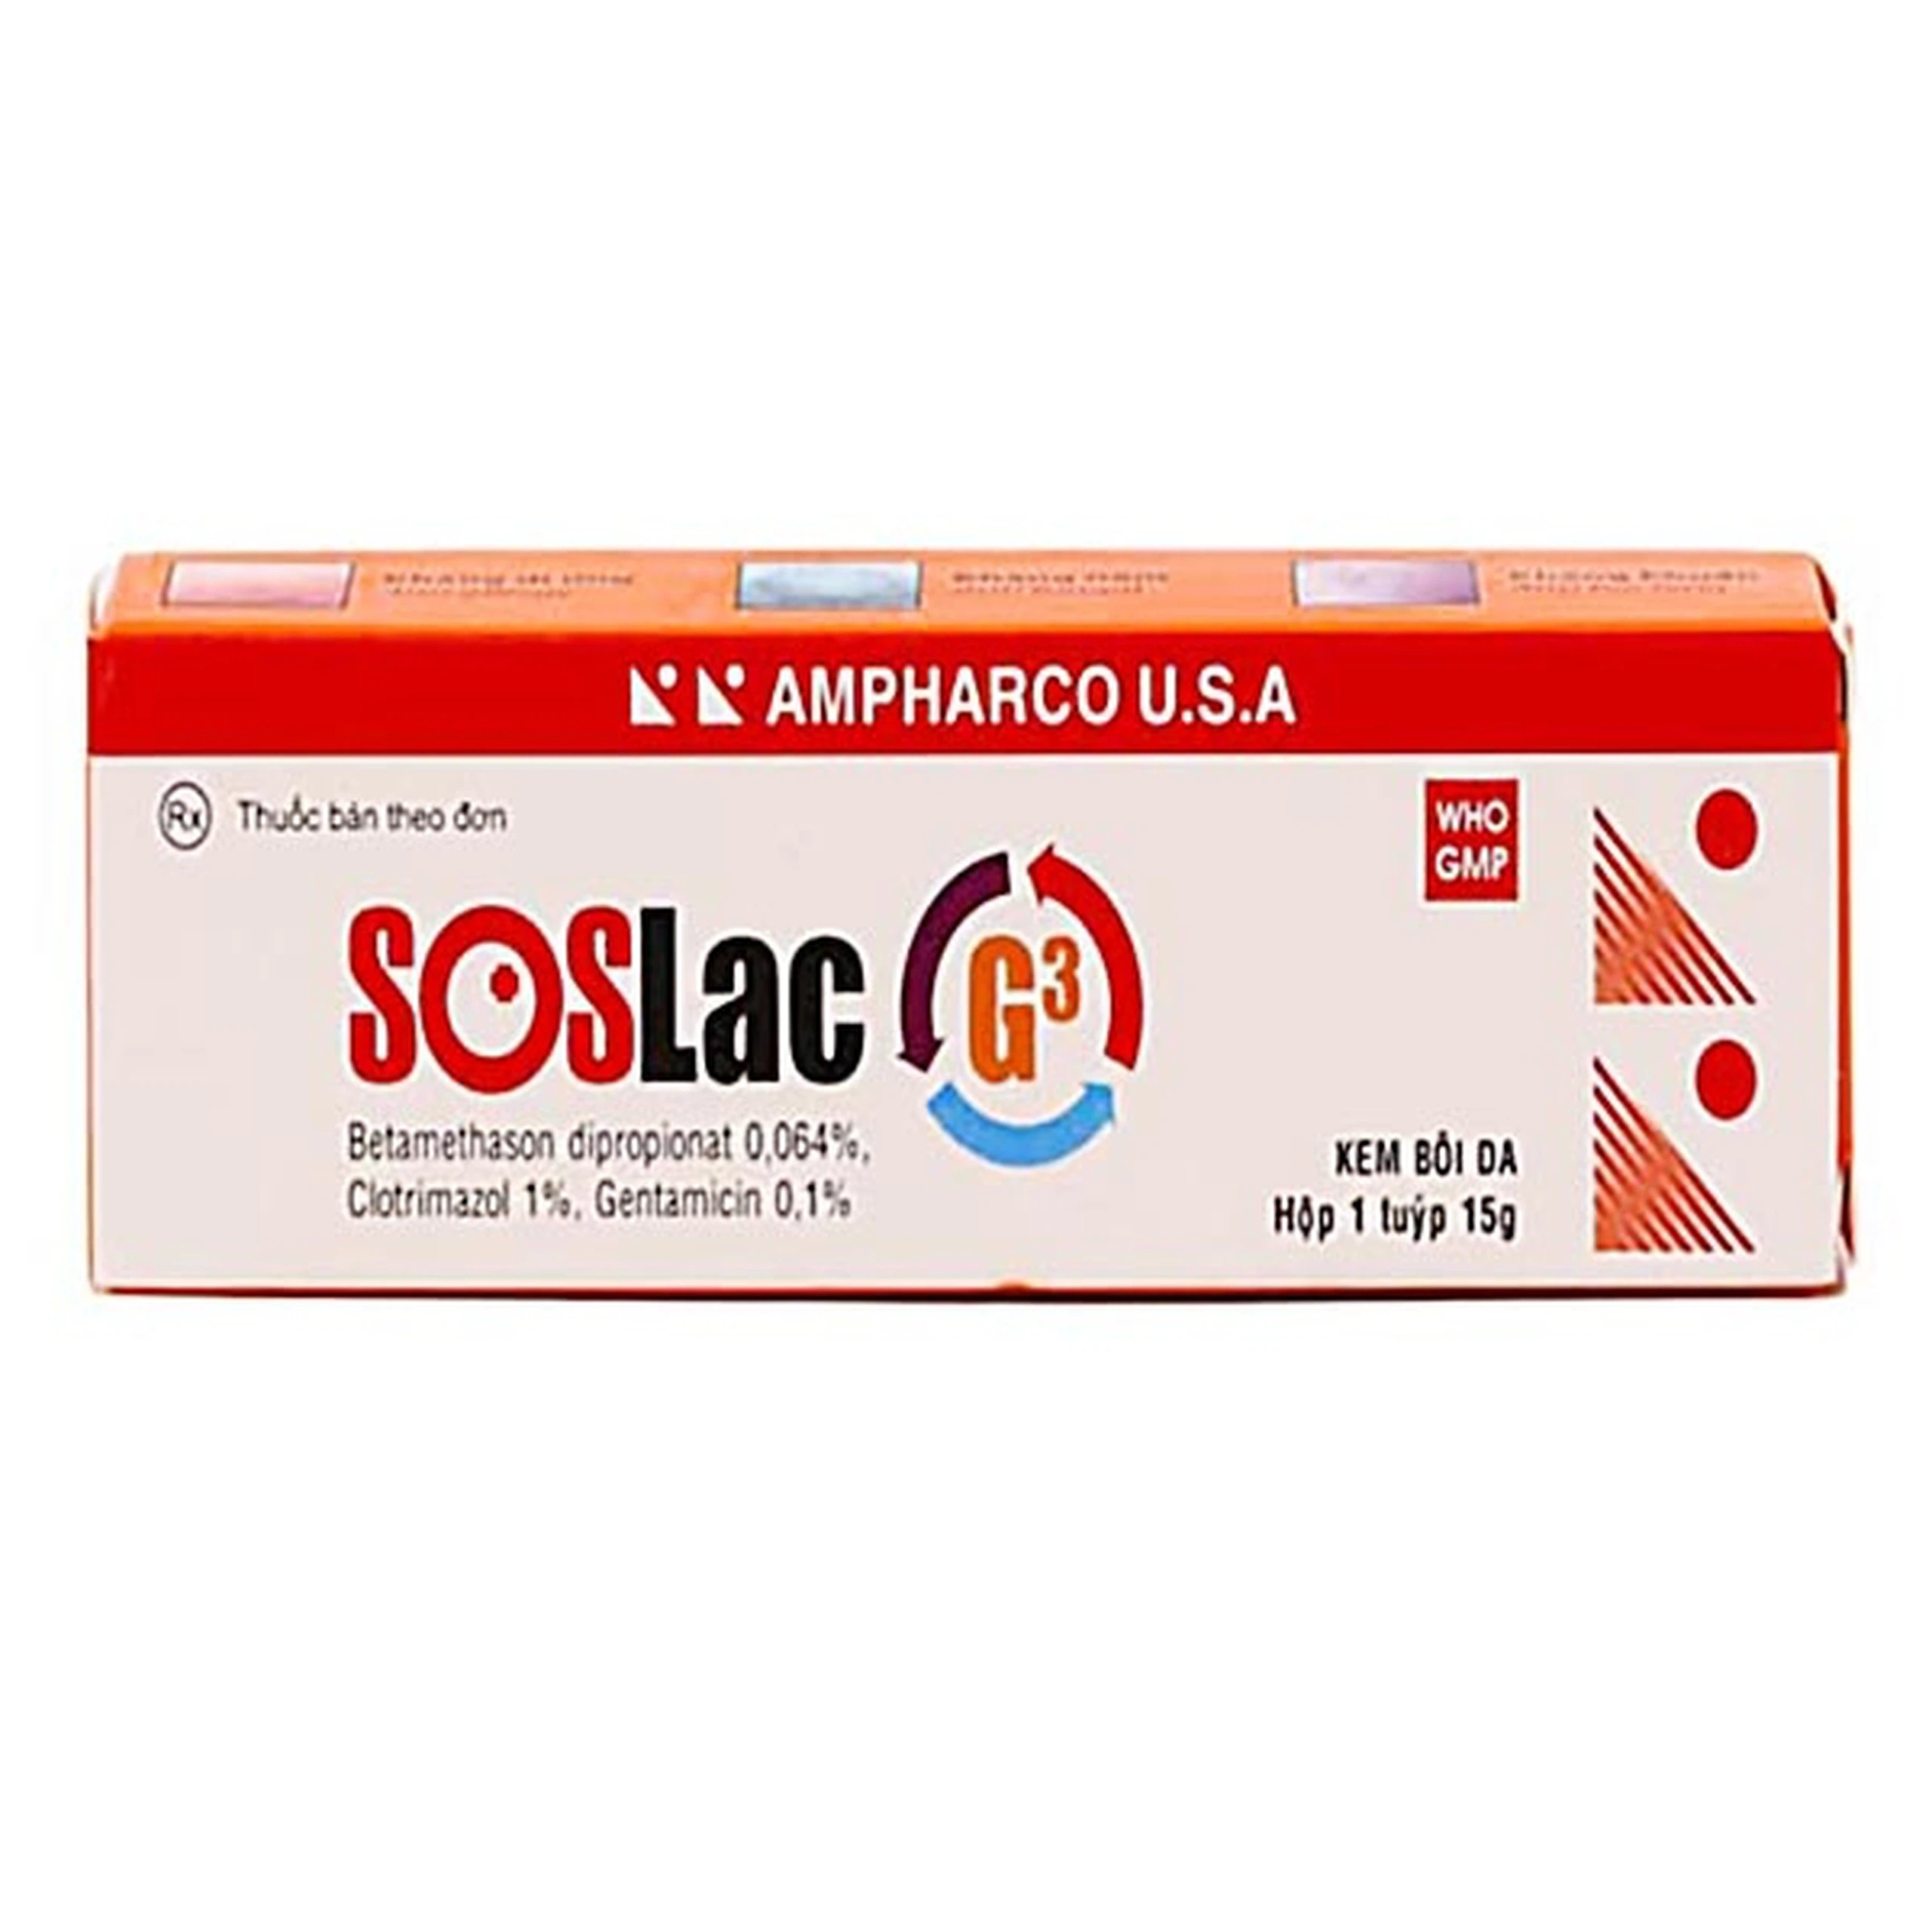 Kem bôi da Soslac G3 Ampharco điều trị viêm da dị ứng, lang ben (15g)